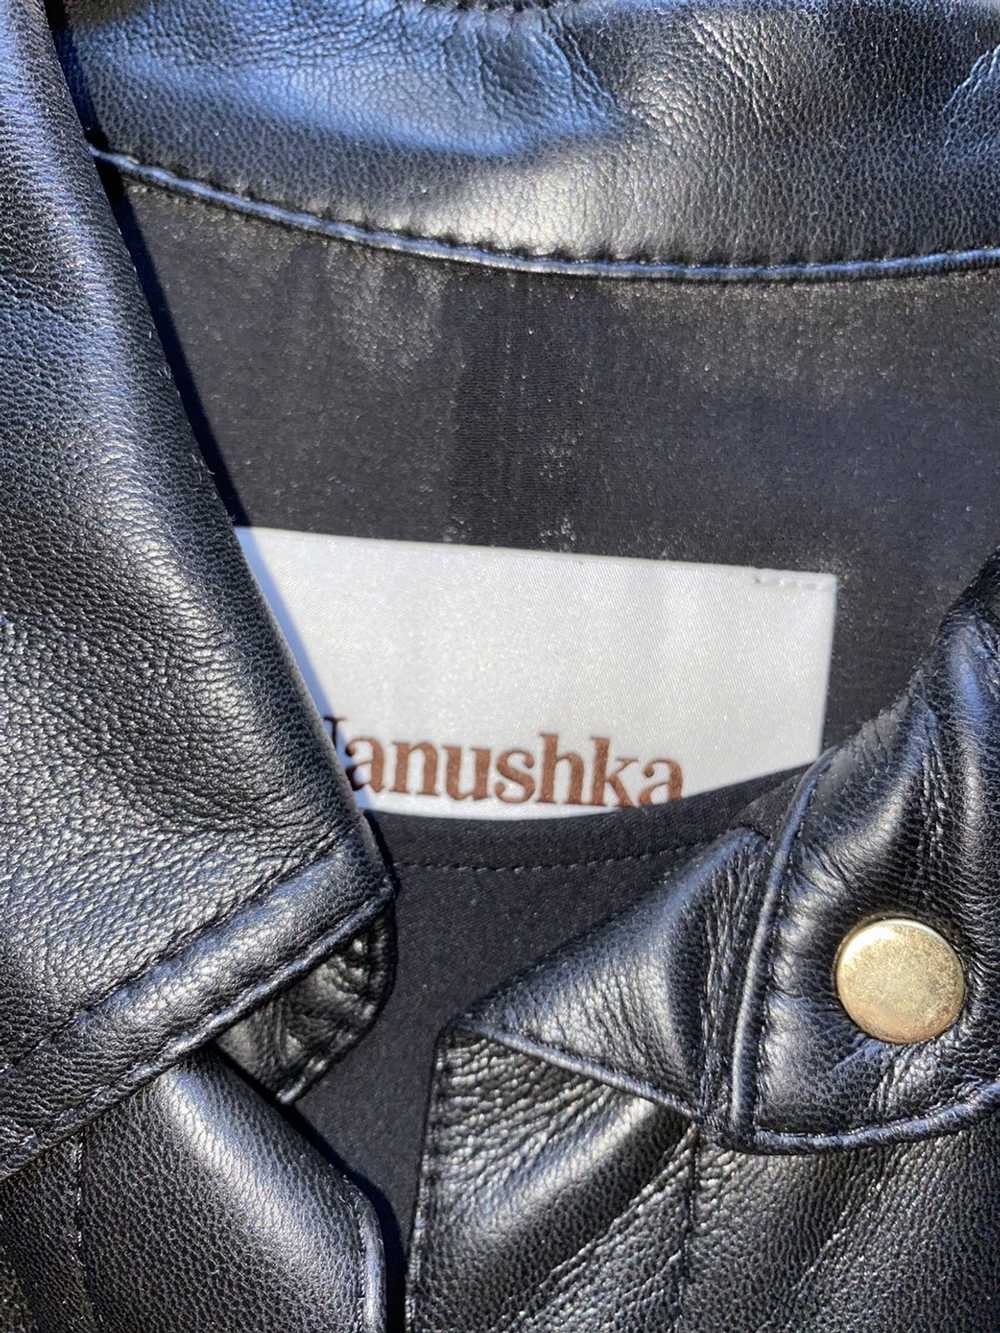 Nanushka Nanushka Vegan Leather Trench Dress - image 3